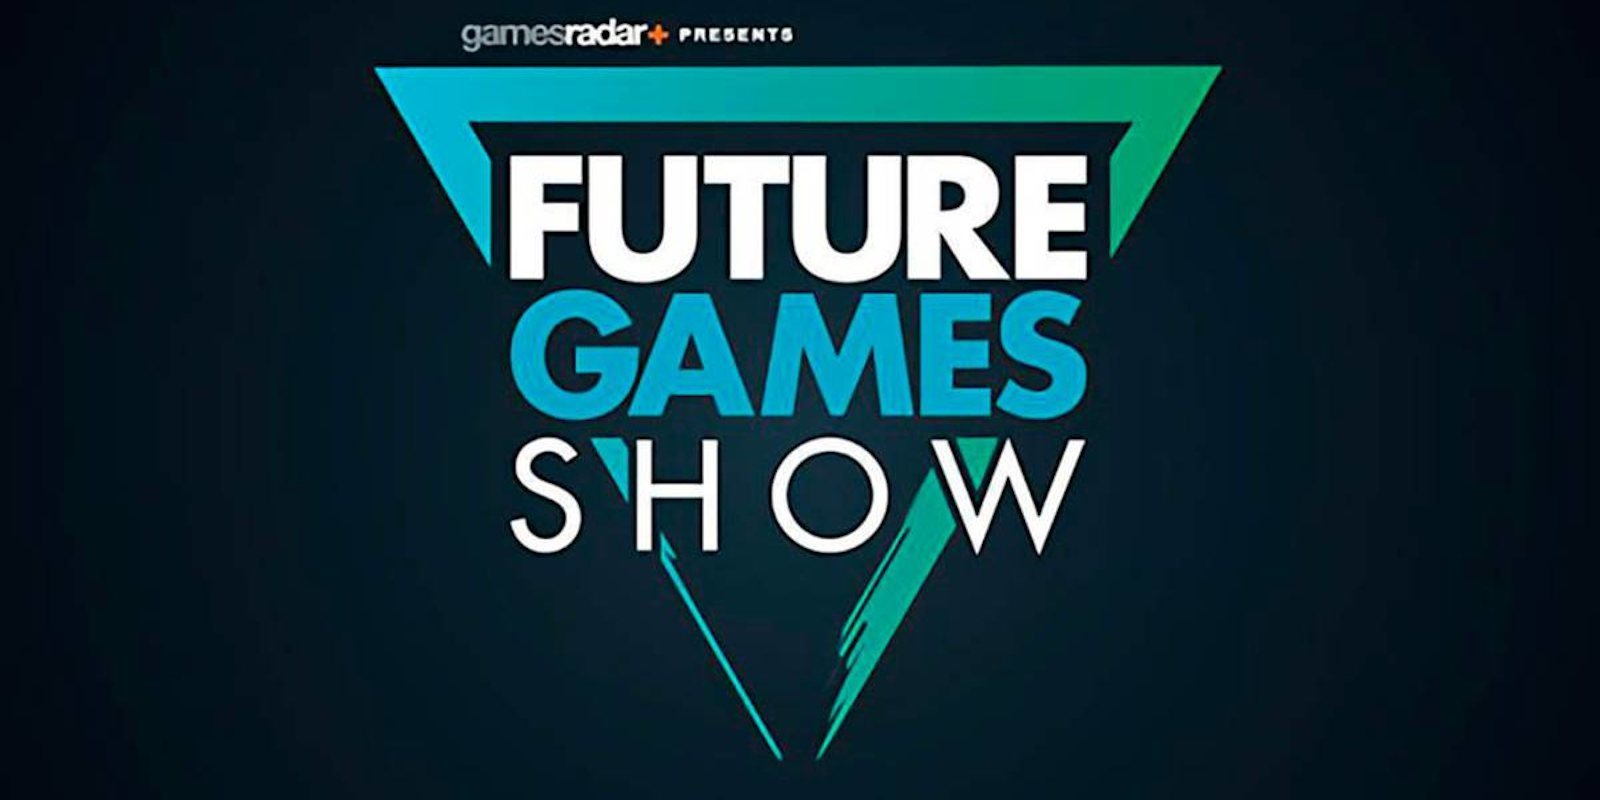 Se anuncia el Future Games Show 2020 para el 6 de junio, donde veremos más de 30 juegos